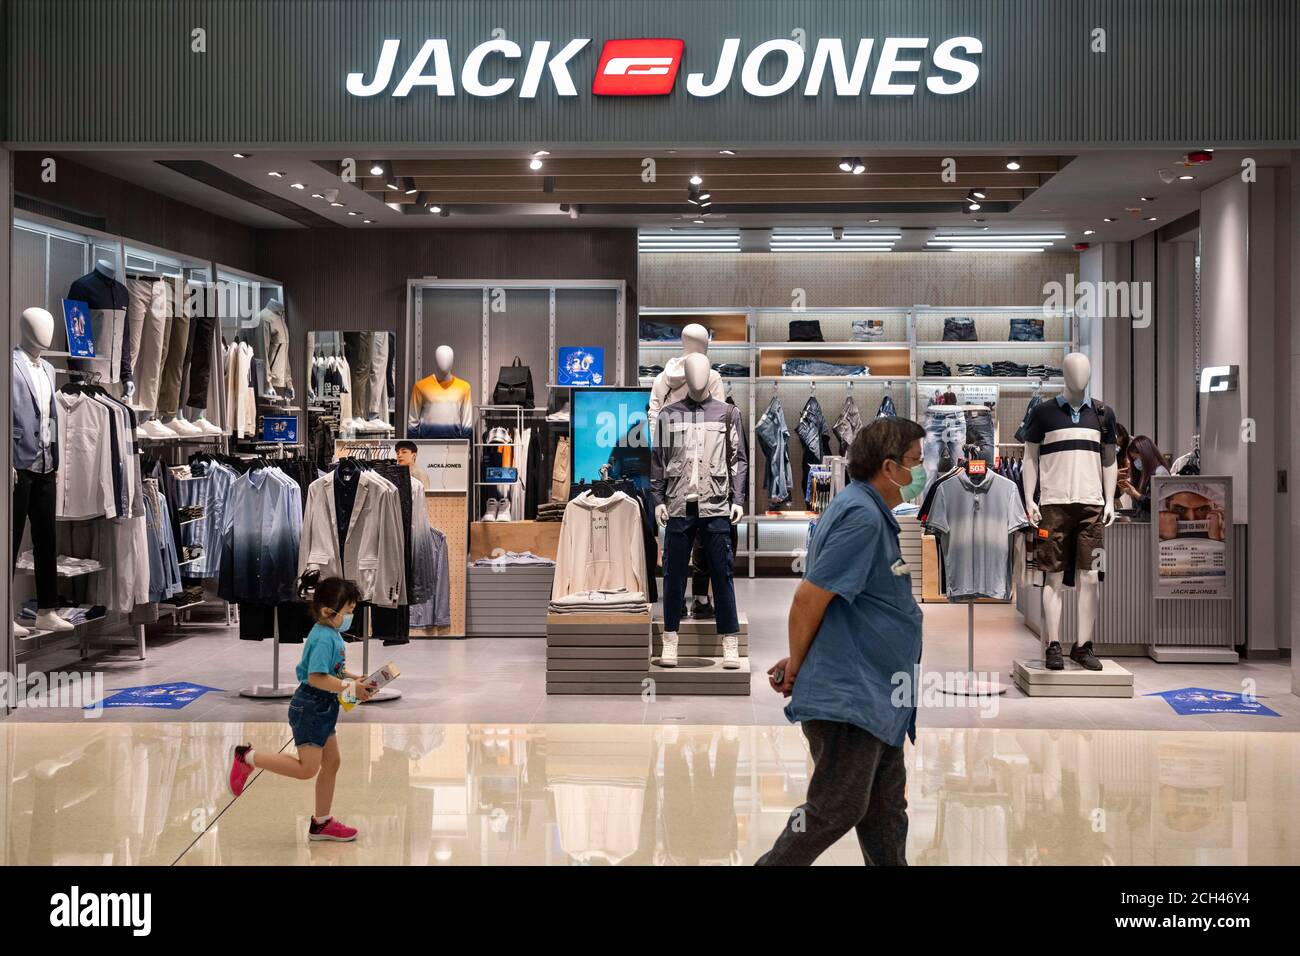 La Marca danesa de ropa de Jack Jones en el centro comercial de Hong Kong Fotografía stock -